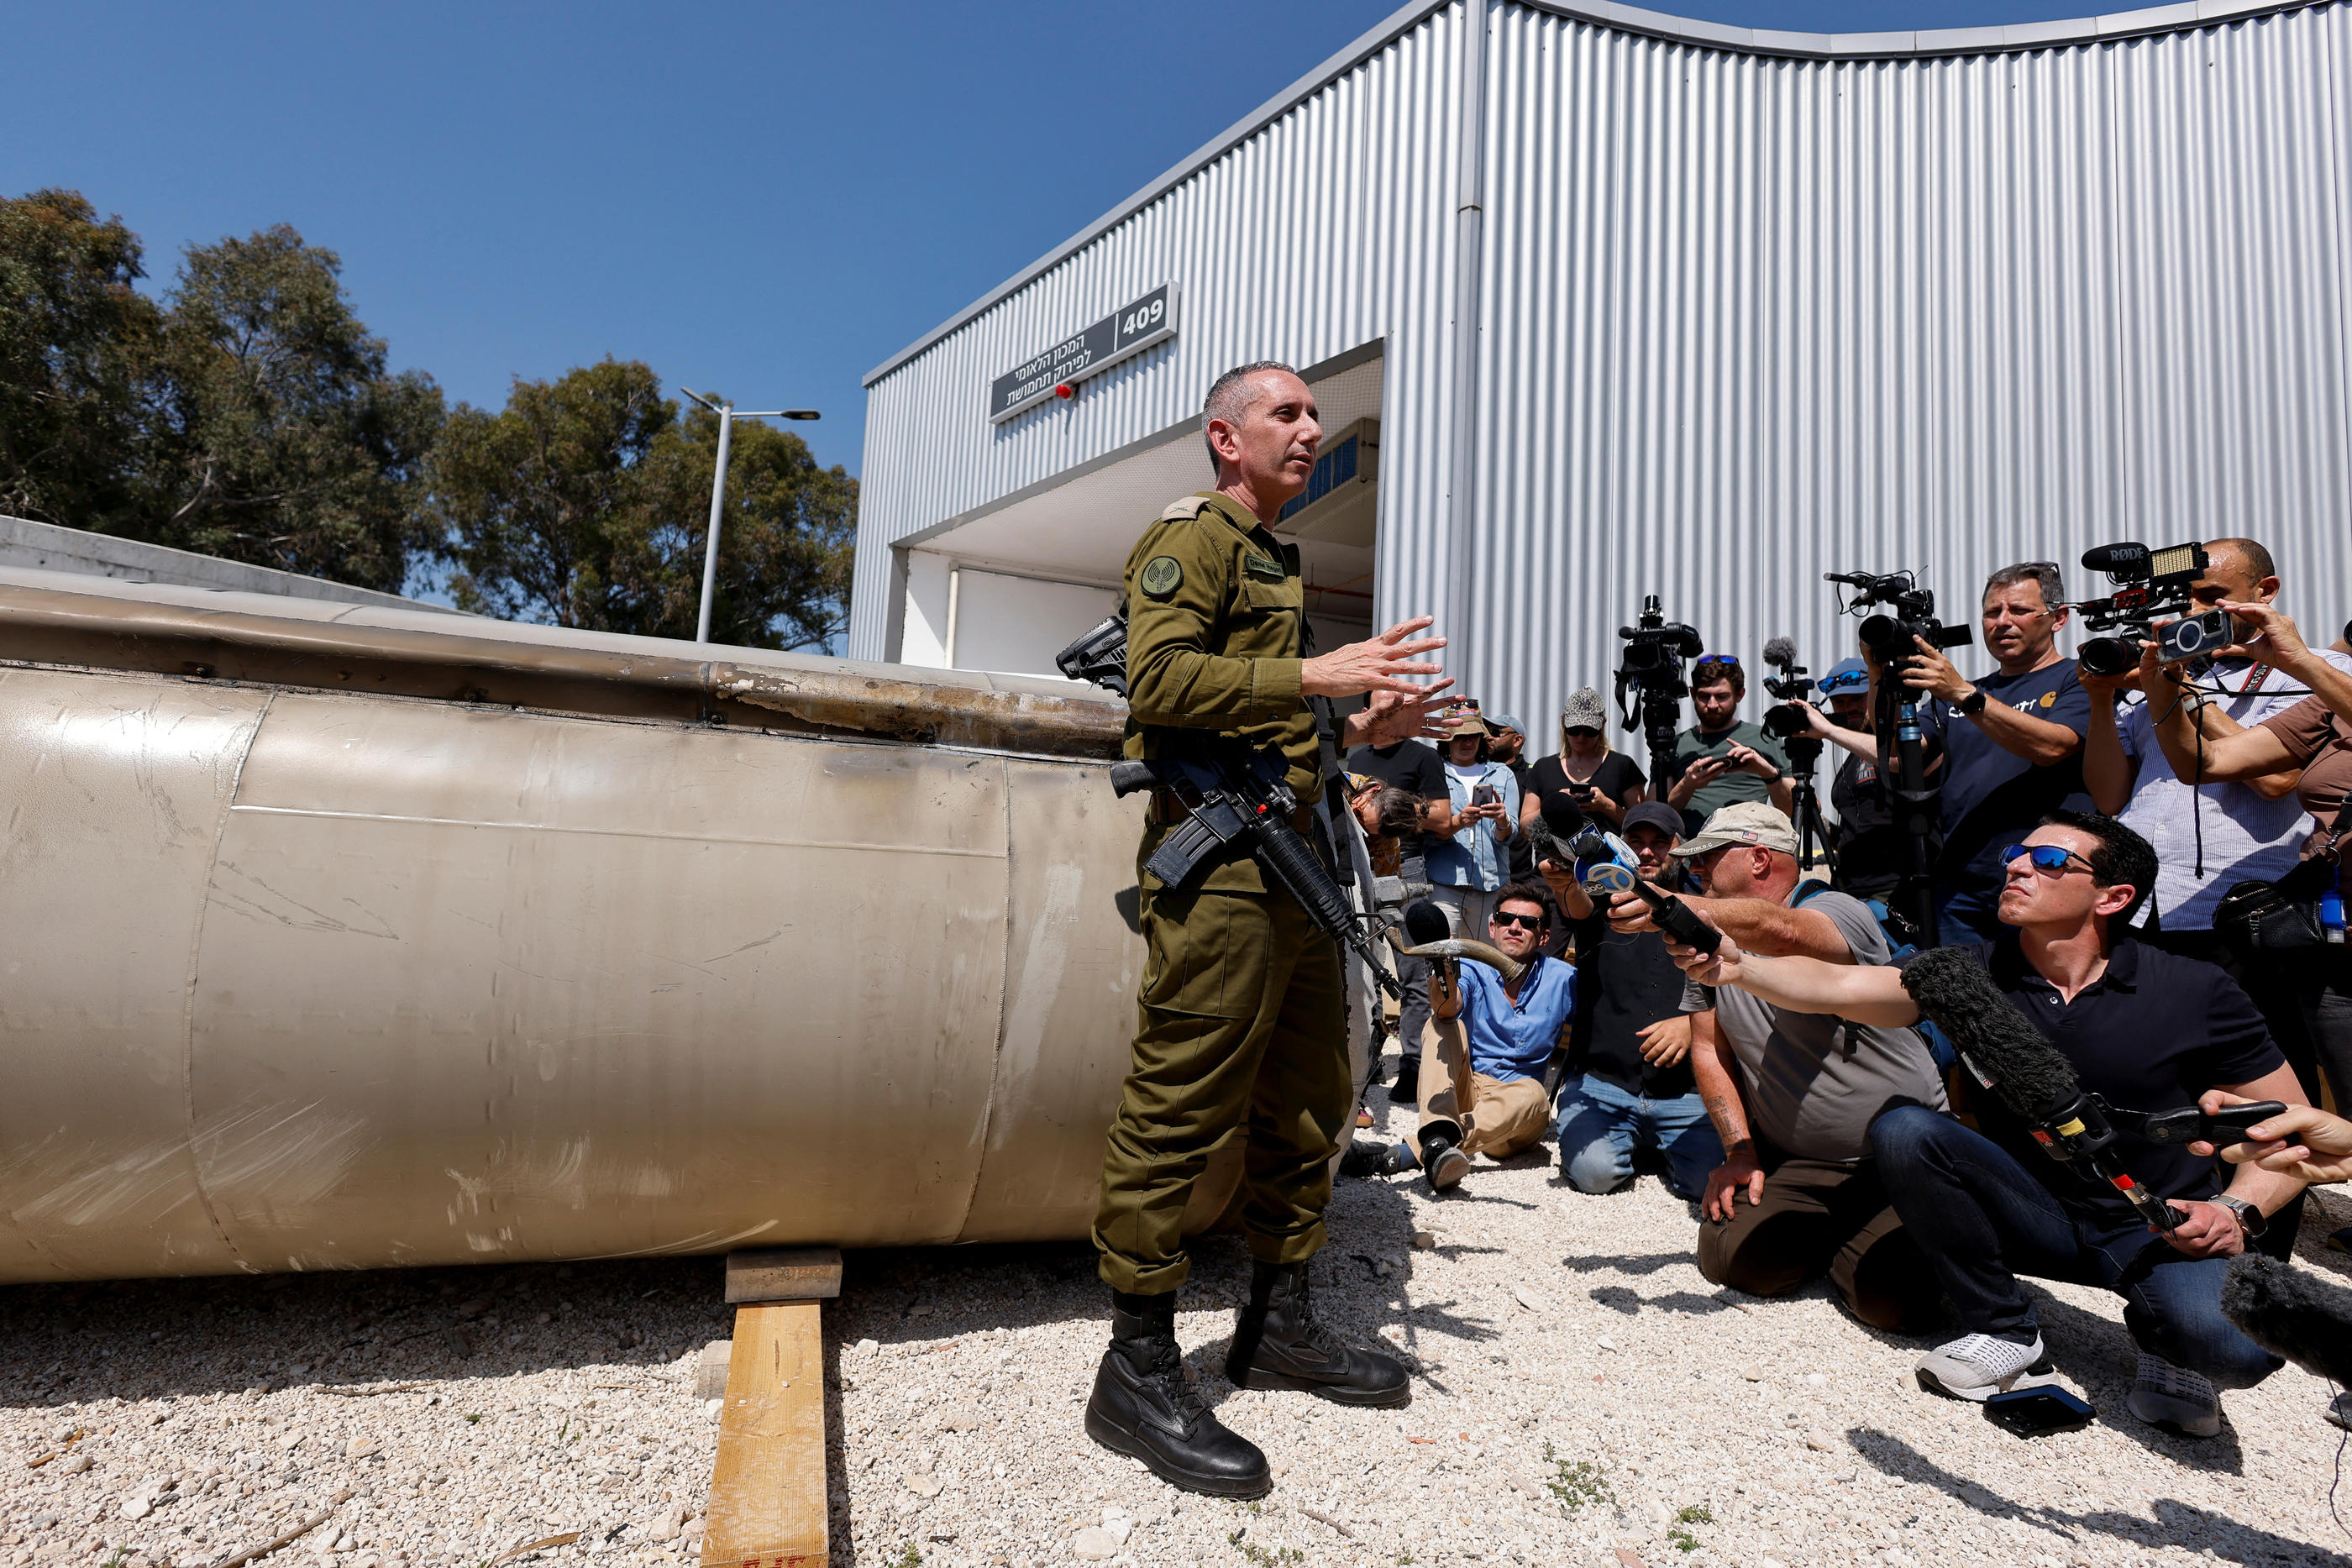 Le porte-parole de l'armée israélienne Daniel Hagari a montré mardi à un groupe de journalistes un des missiles intercepté lors de l’attaque. iranienne. Reuters / Amir Cohen